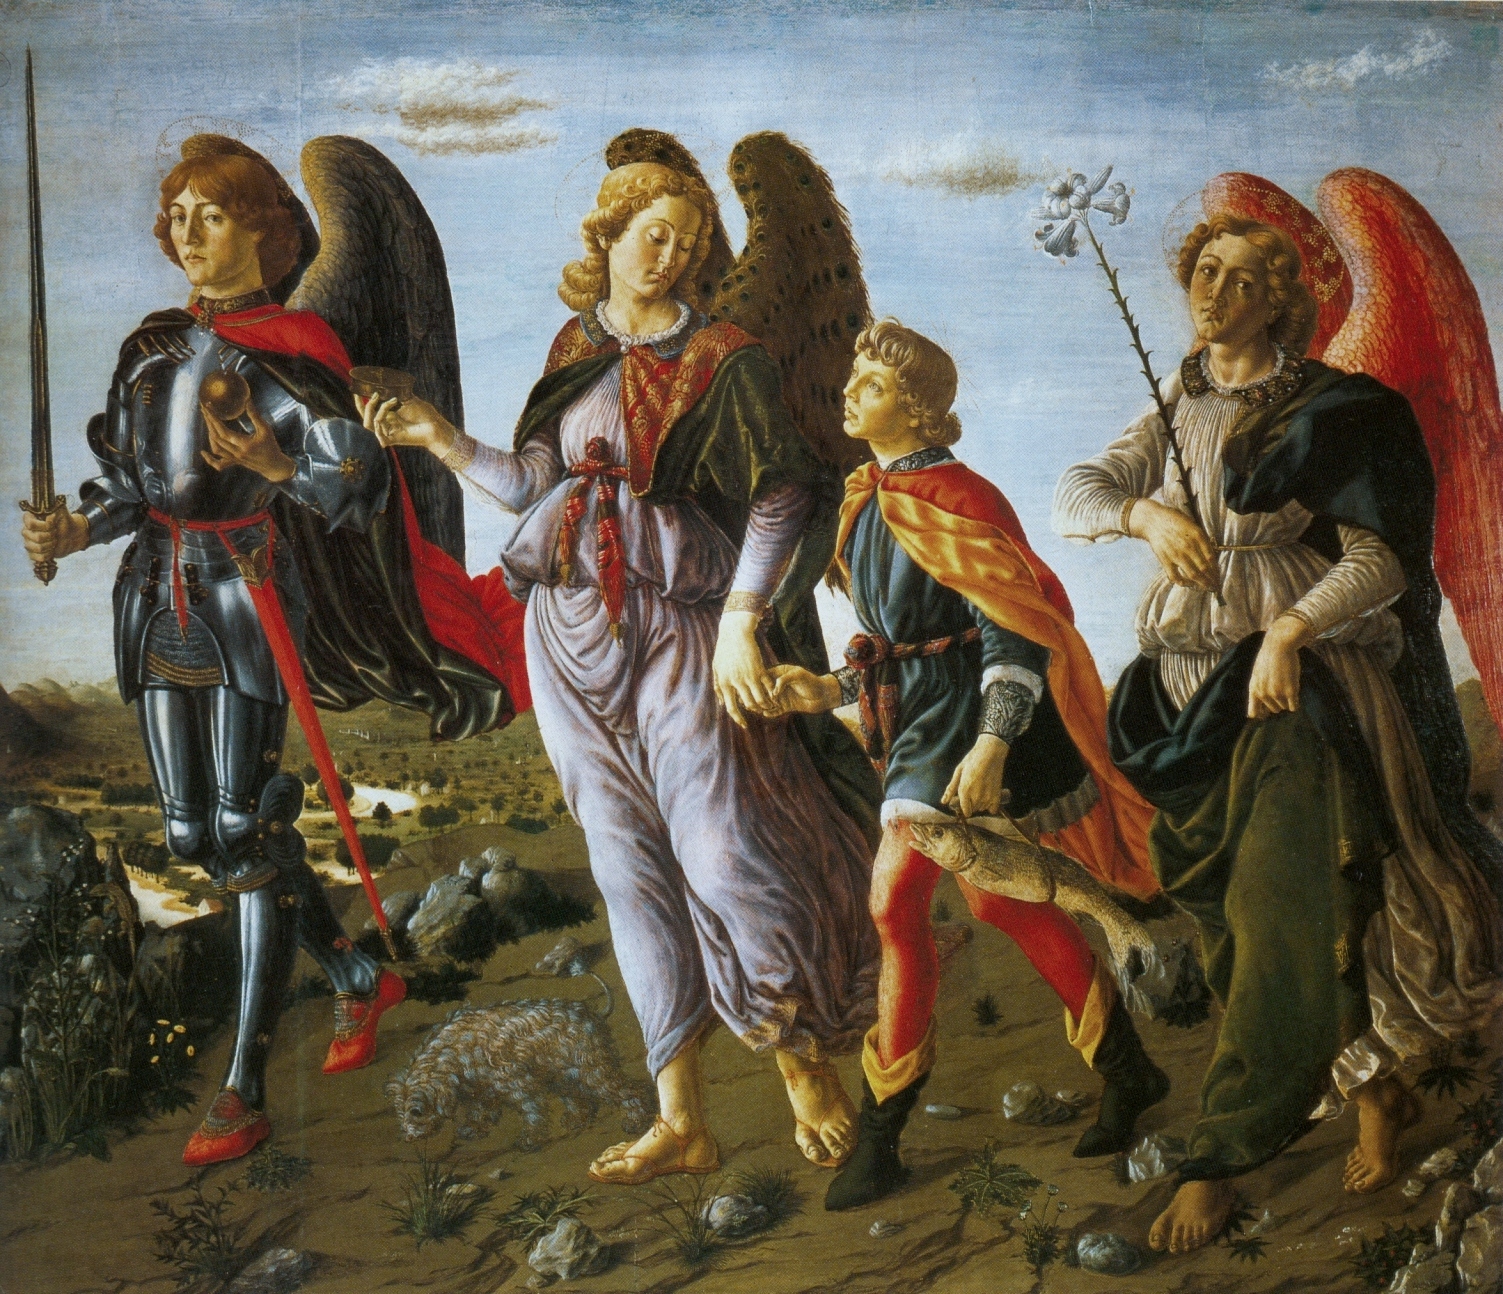 Francesco_Botticini_Three_Archangels_with_Tobias._(135x154cm)_c.1471_Uffizi,_Florence